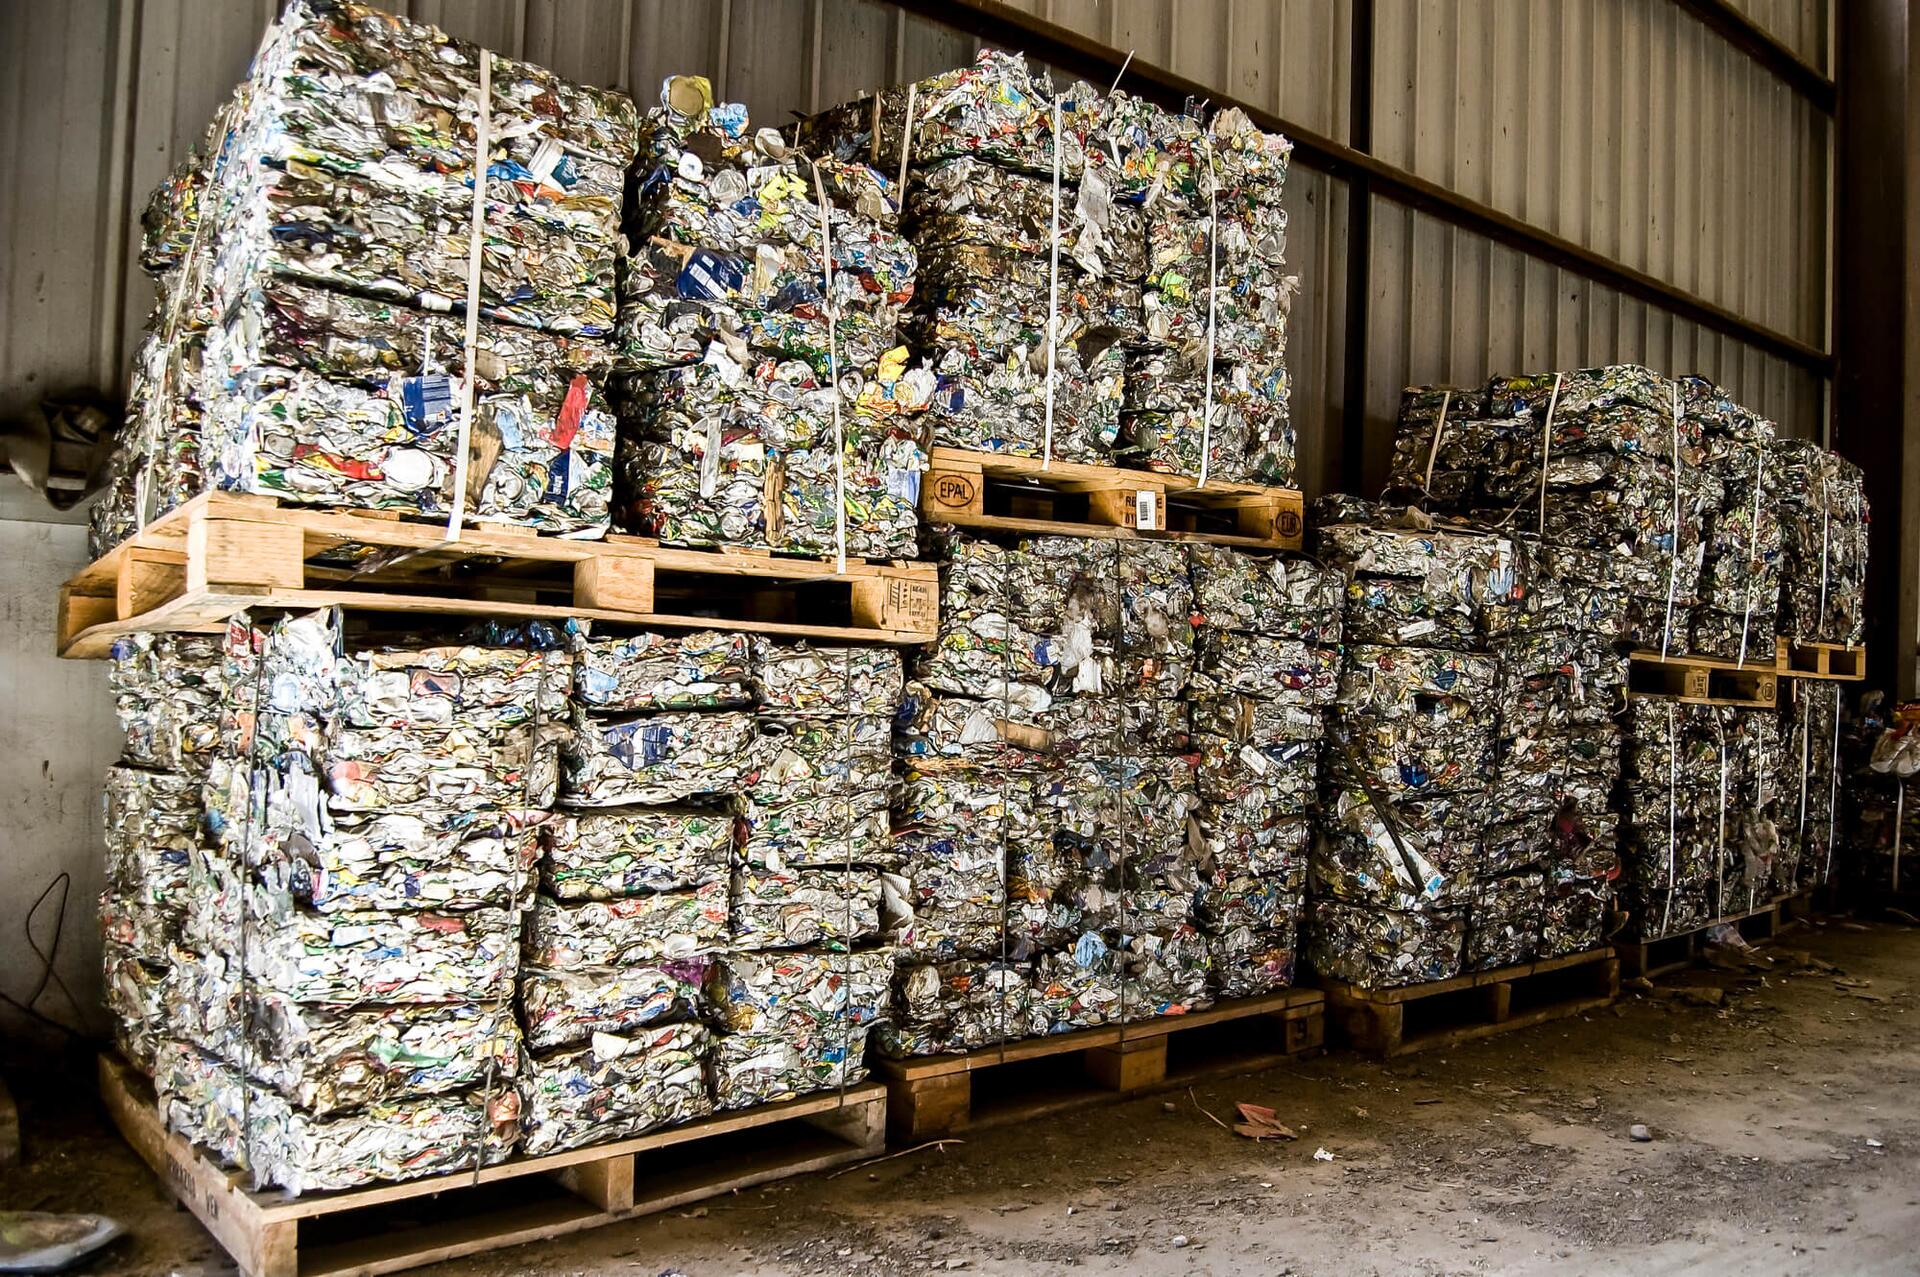 Stroje pro zpracování šrotu, surovin a recyklaci odpadu